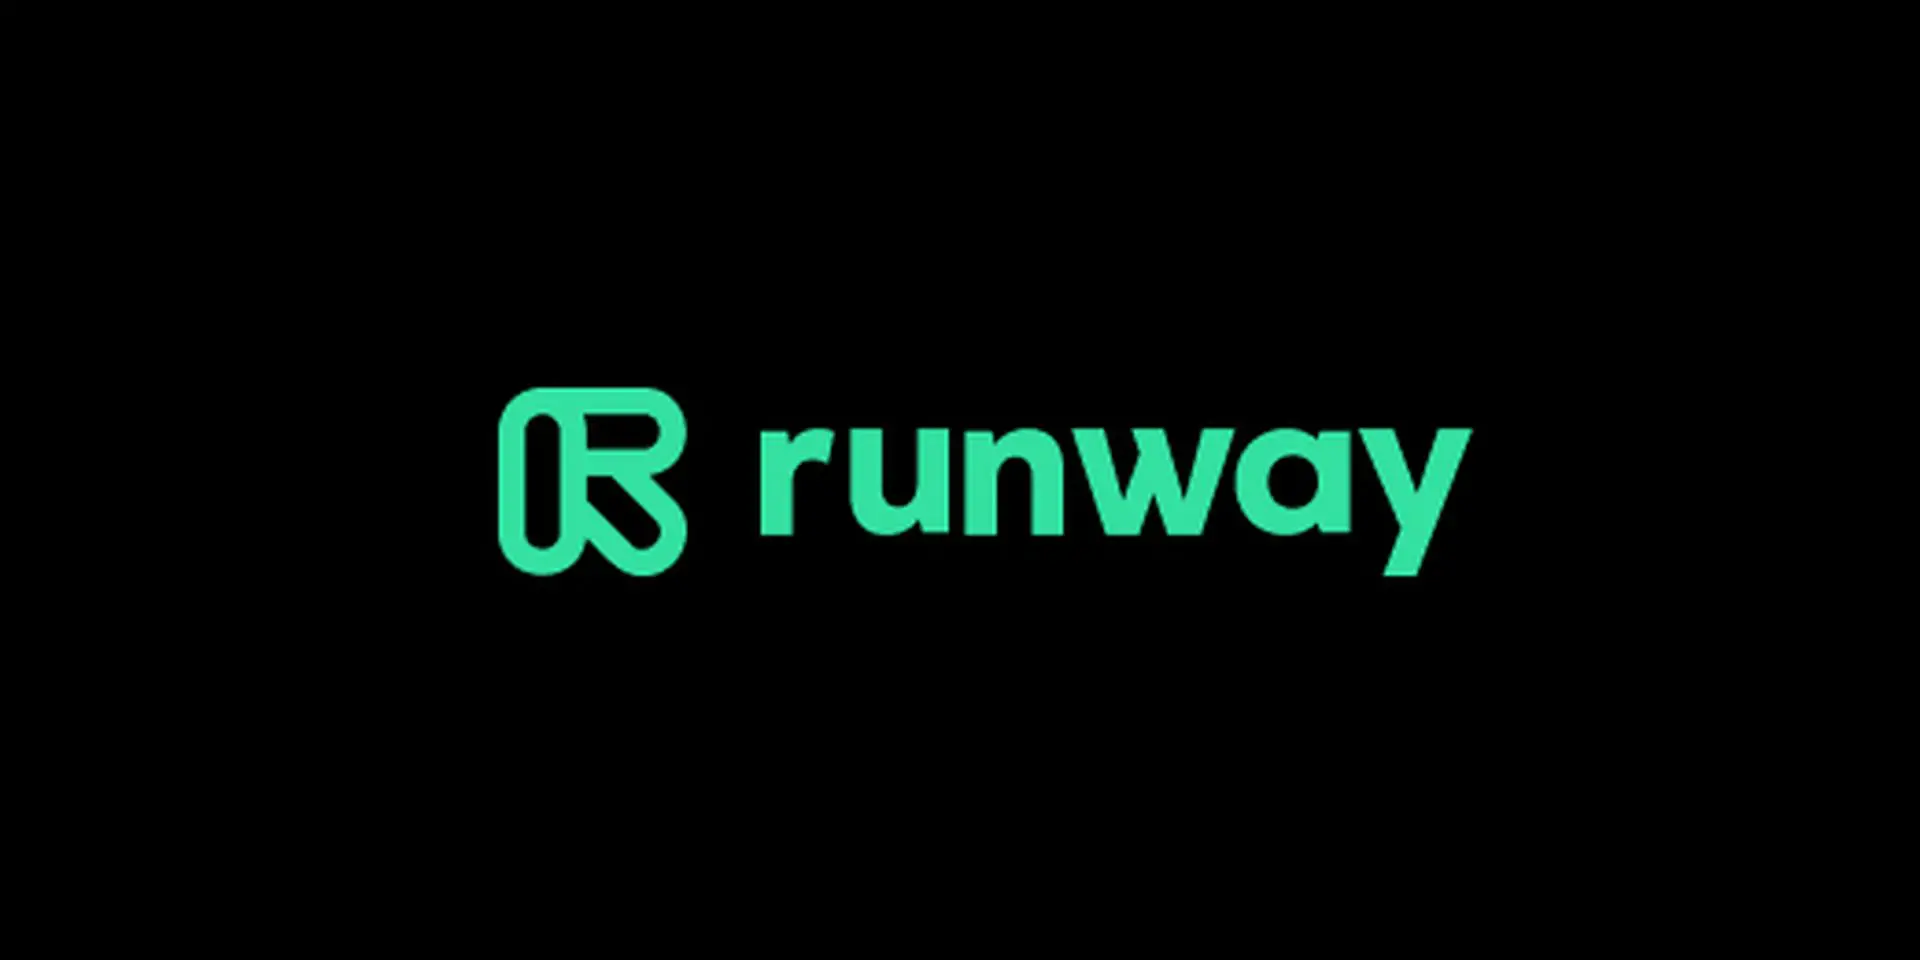 Runway AI Gen-2 biến trình tạo AI chuyển văn bản thành video thành hiện thực